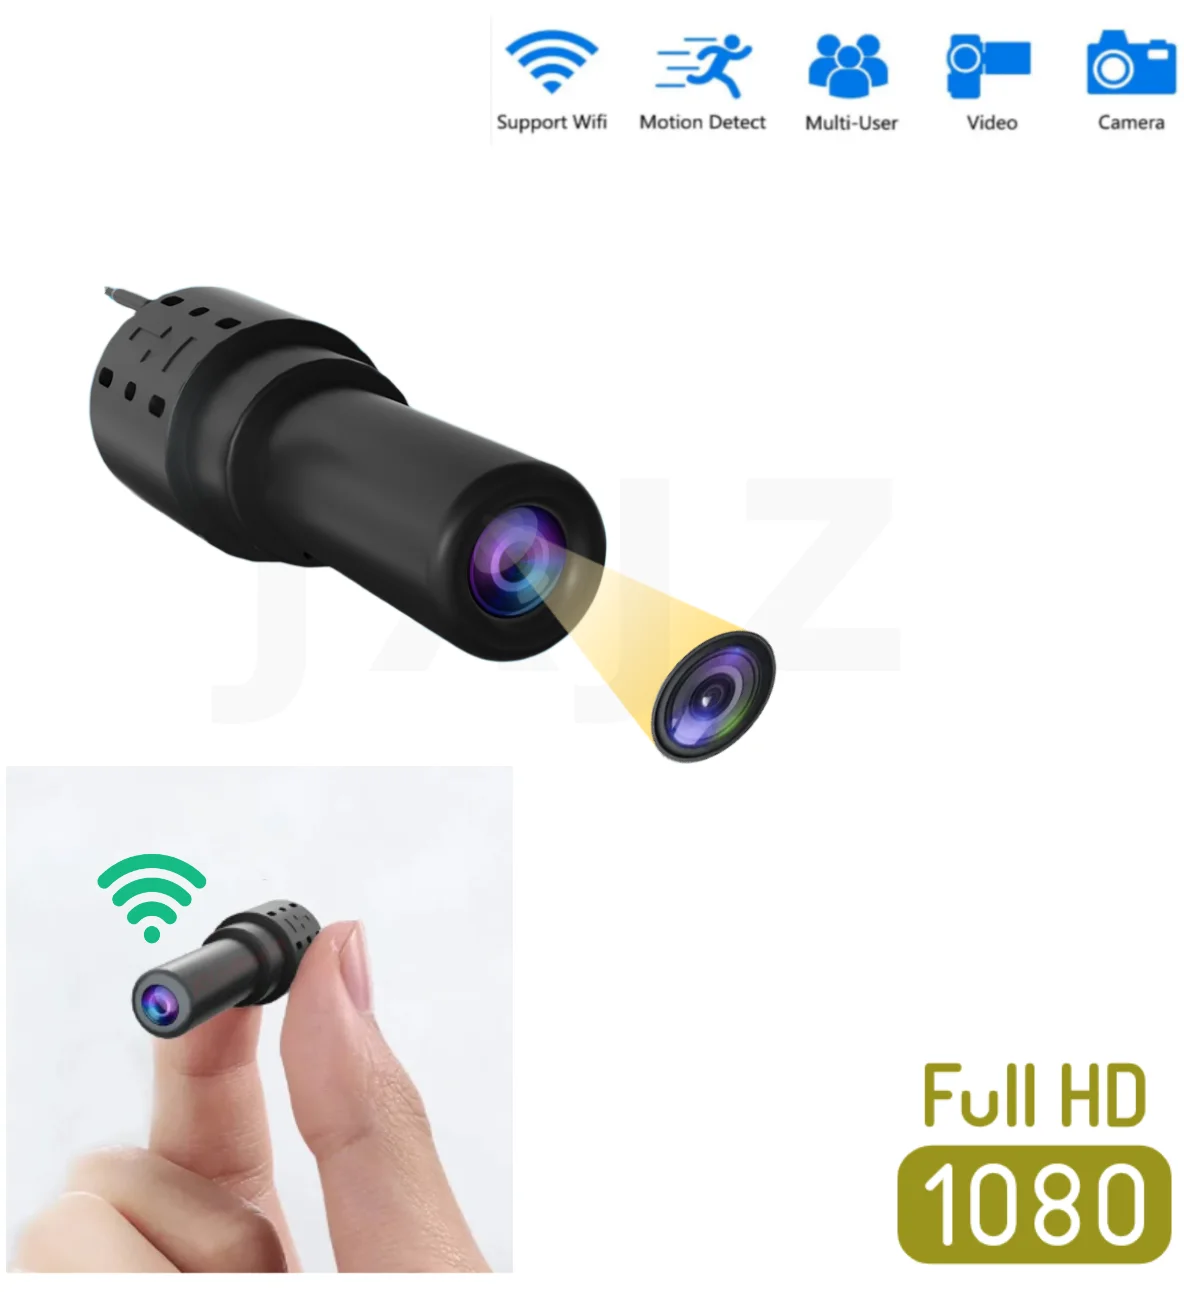 

Wi-Fi мини-камера HD 1080P DVR ночное видение видеокамера Беспроводная микро-Камера спортивная DV видео ультра маленькая секретная камера X14